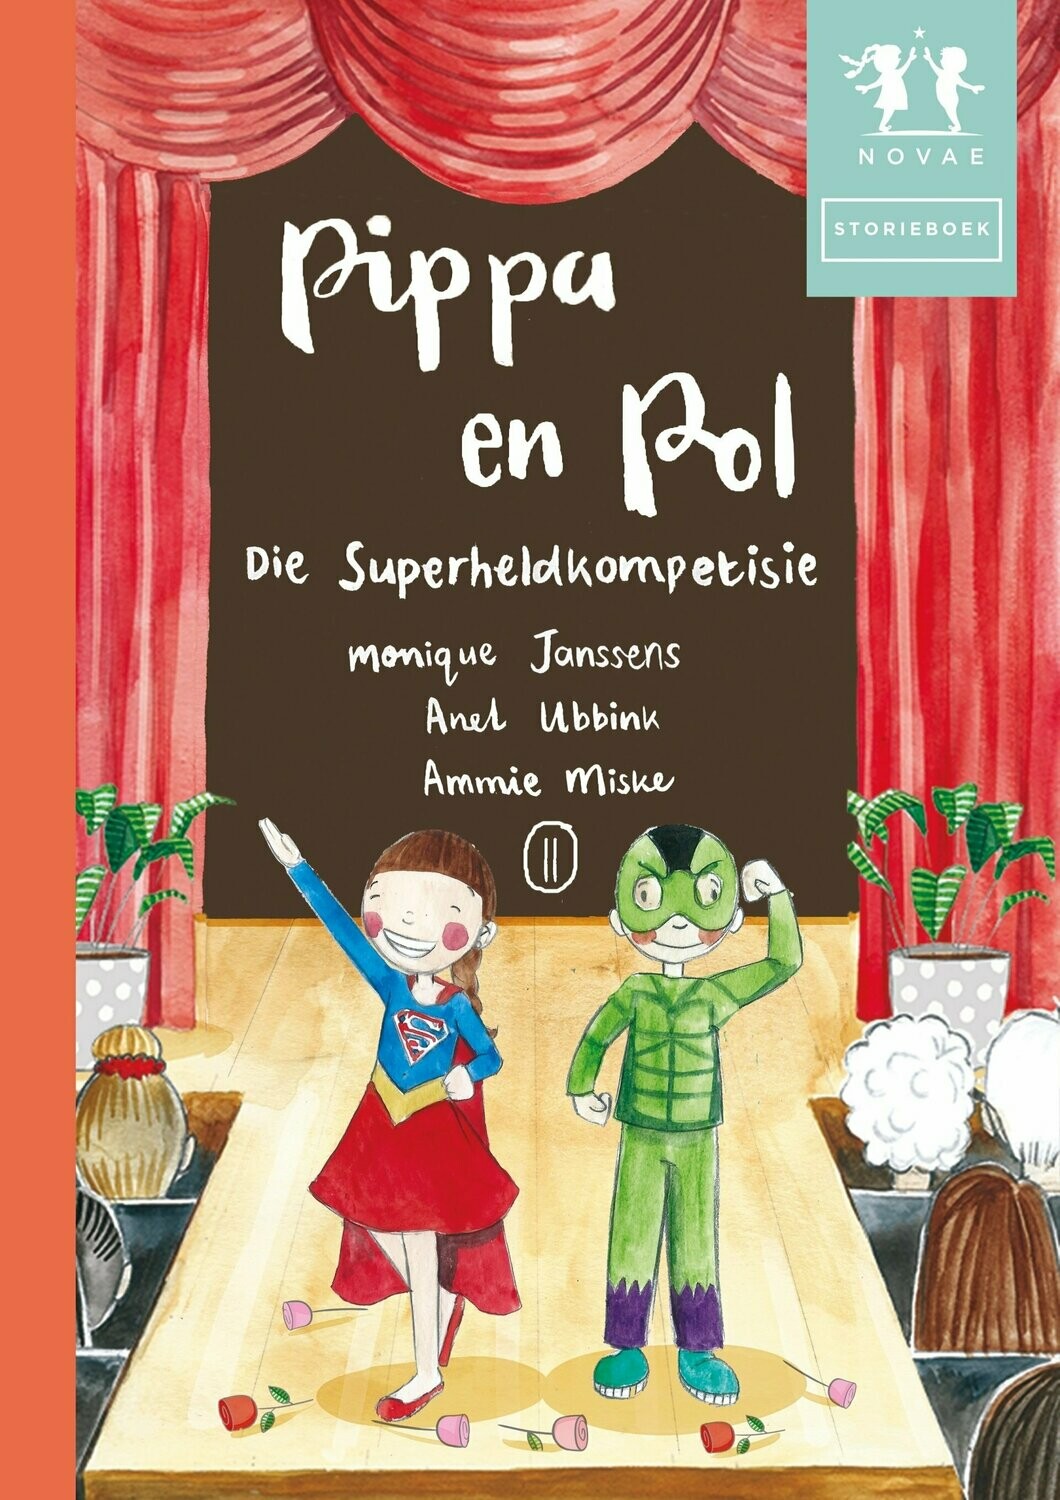 Pippa en Pol: DIe Superheldkompetisie - Storieboek